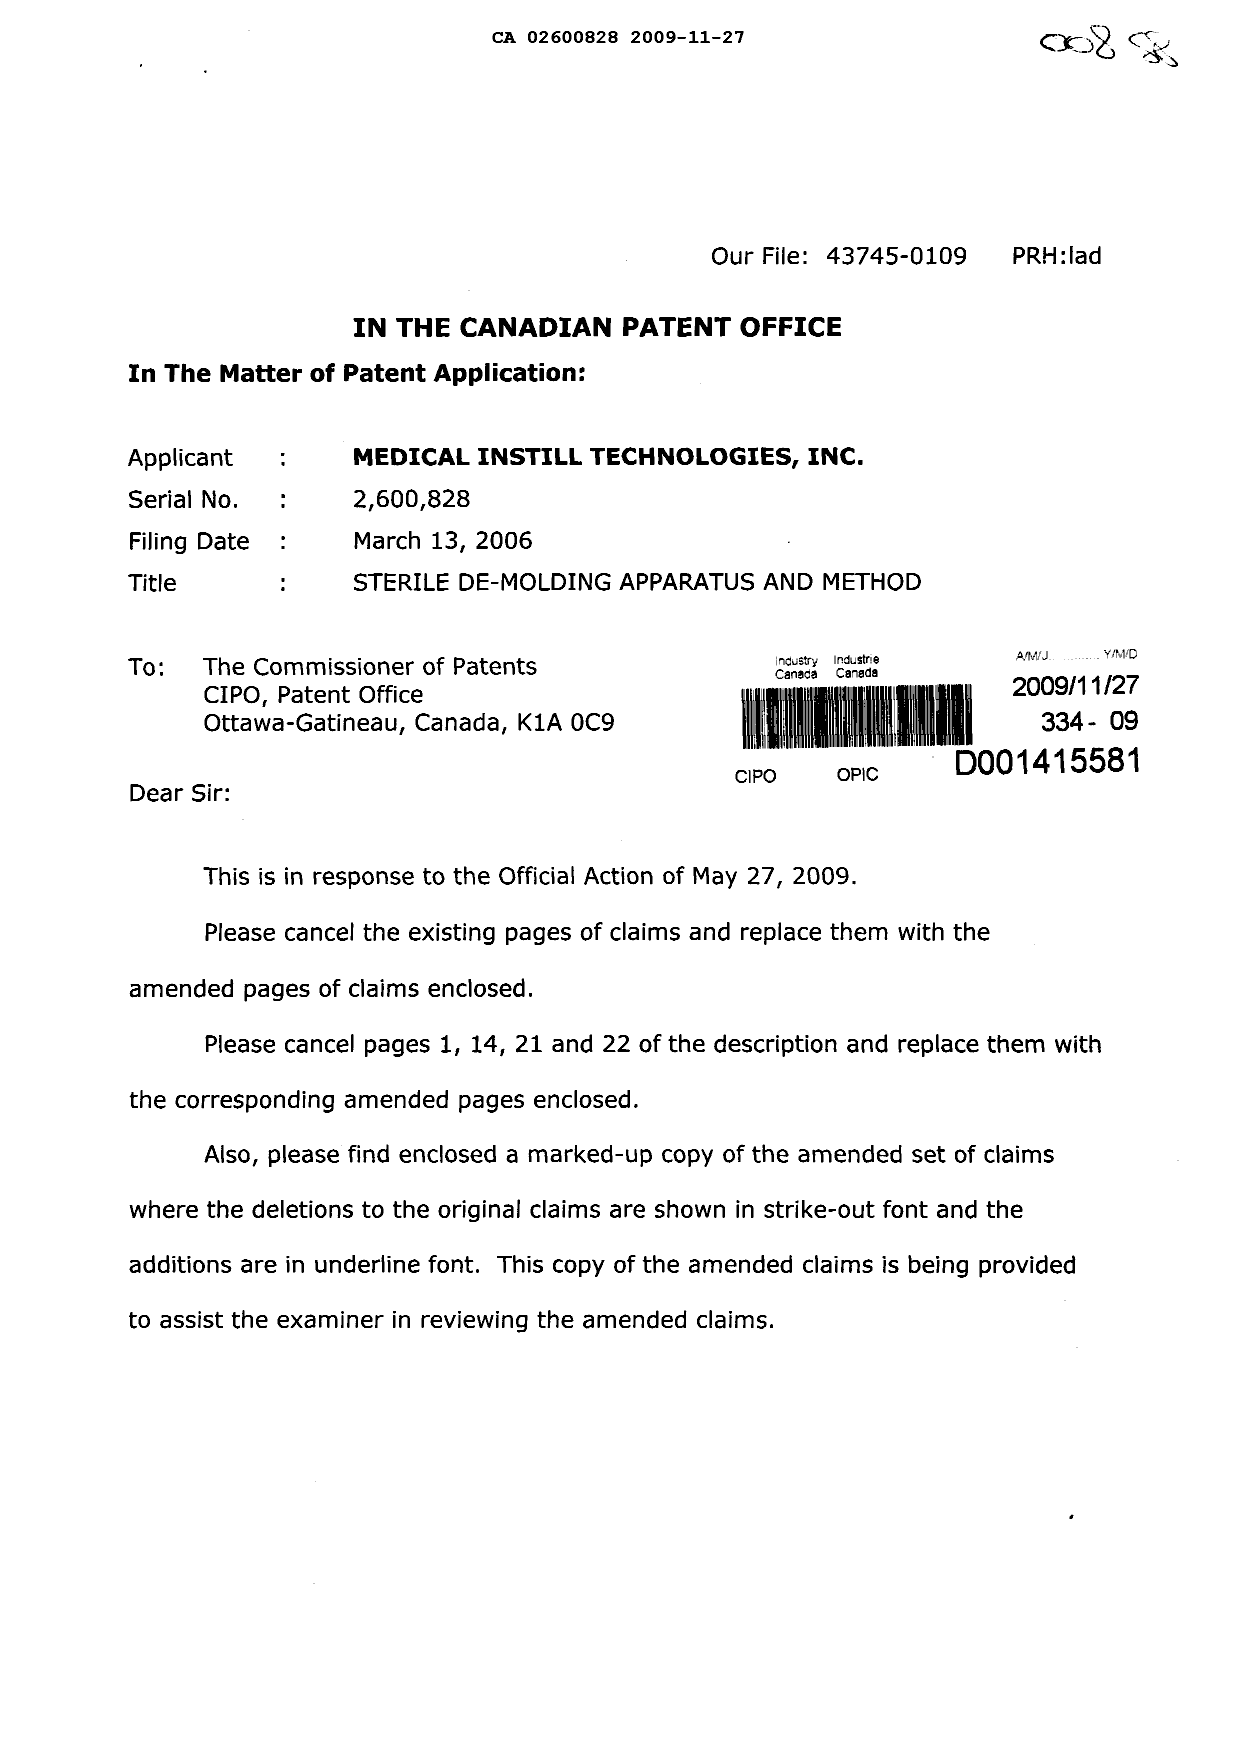 Document de brevet canadien 2600828. Poursuite-Amendment 20091127. Image 1 de 21